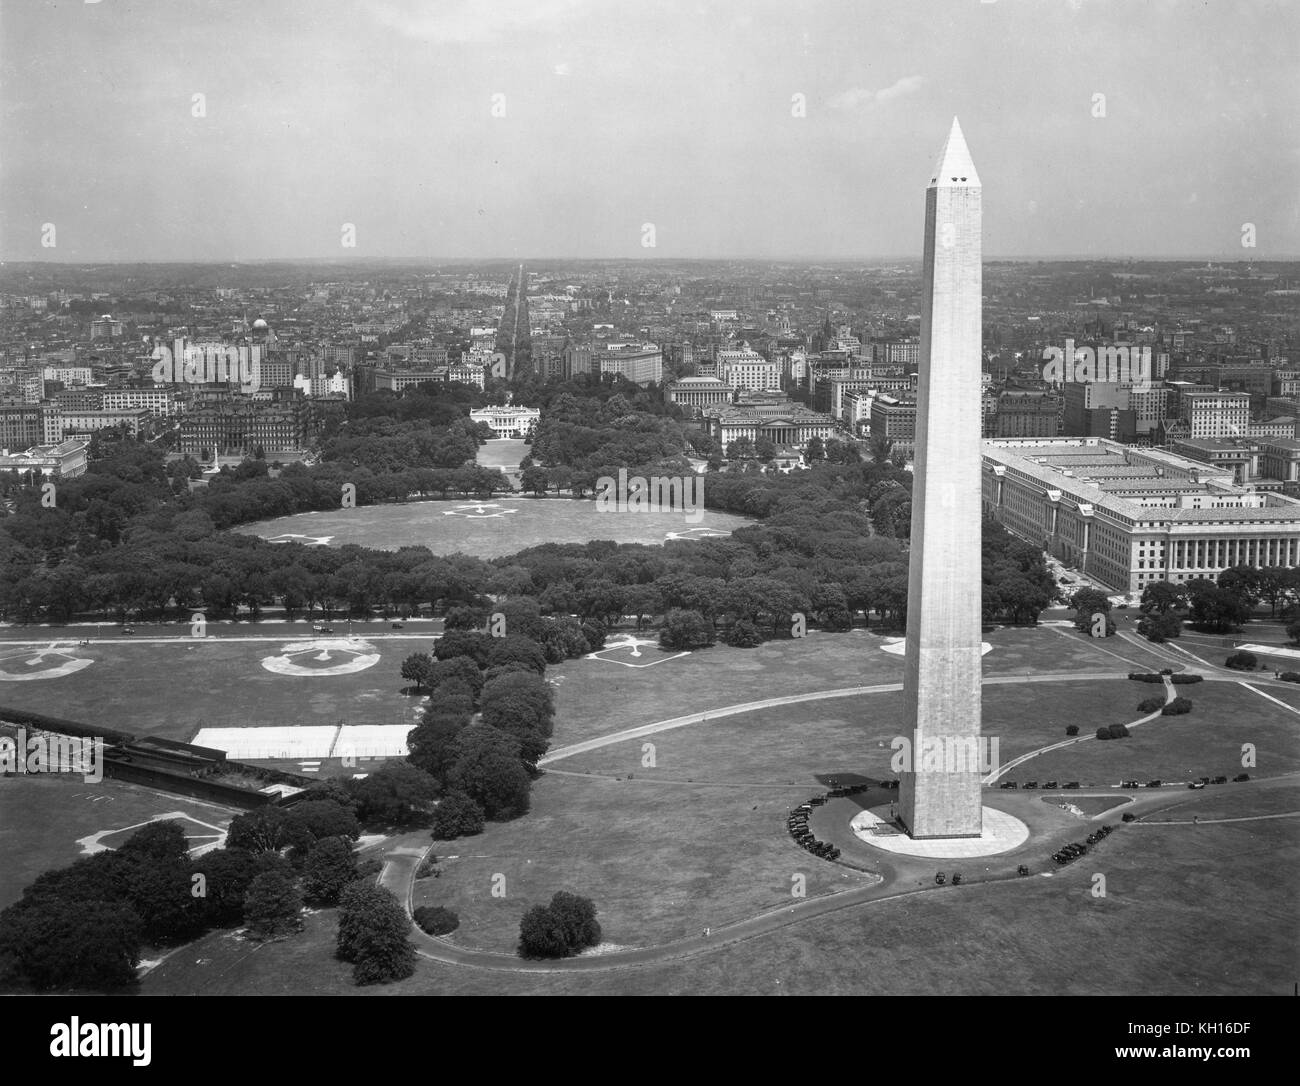 Vista aerea del Monumento di Washington, il dipartimento del commercio (centro) e il bacino di marea (in alto a destra sullo sfondo) prima della costruzione del Jefferson Memorial, come presi da un US Army Air Corps aeromobile, Washington DC, 03/12/1932. Foto Stock